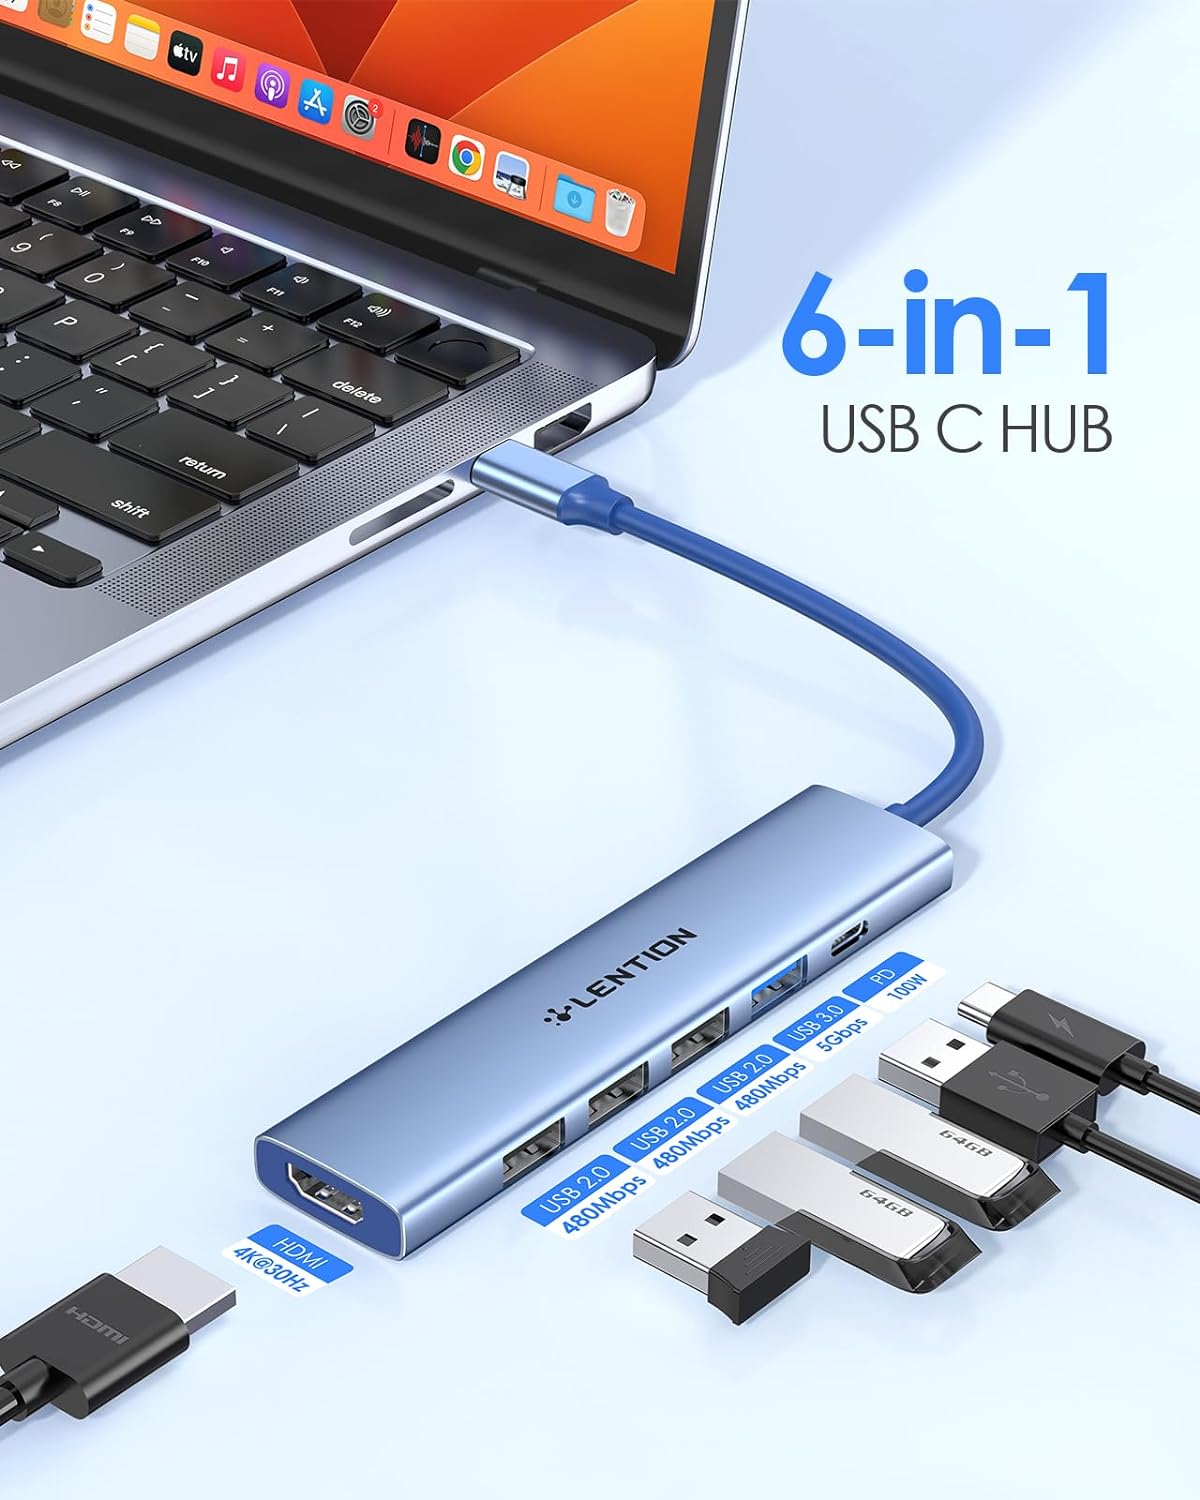 هاب 6 پورت لنشن تایپ C مدل LENTION USB C Hub Multiport  - ارسال 10 الی 15 روز کاری